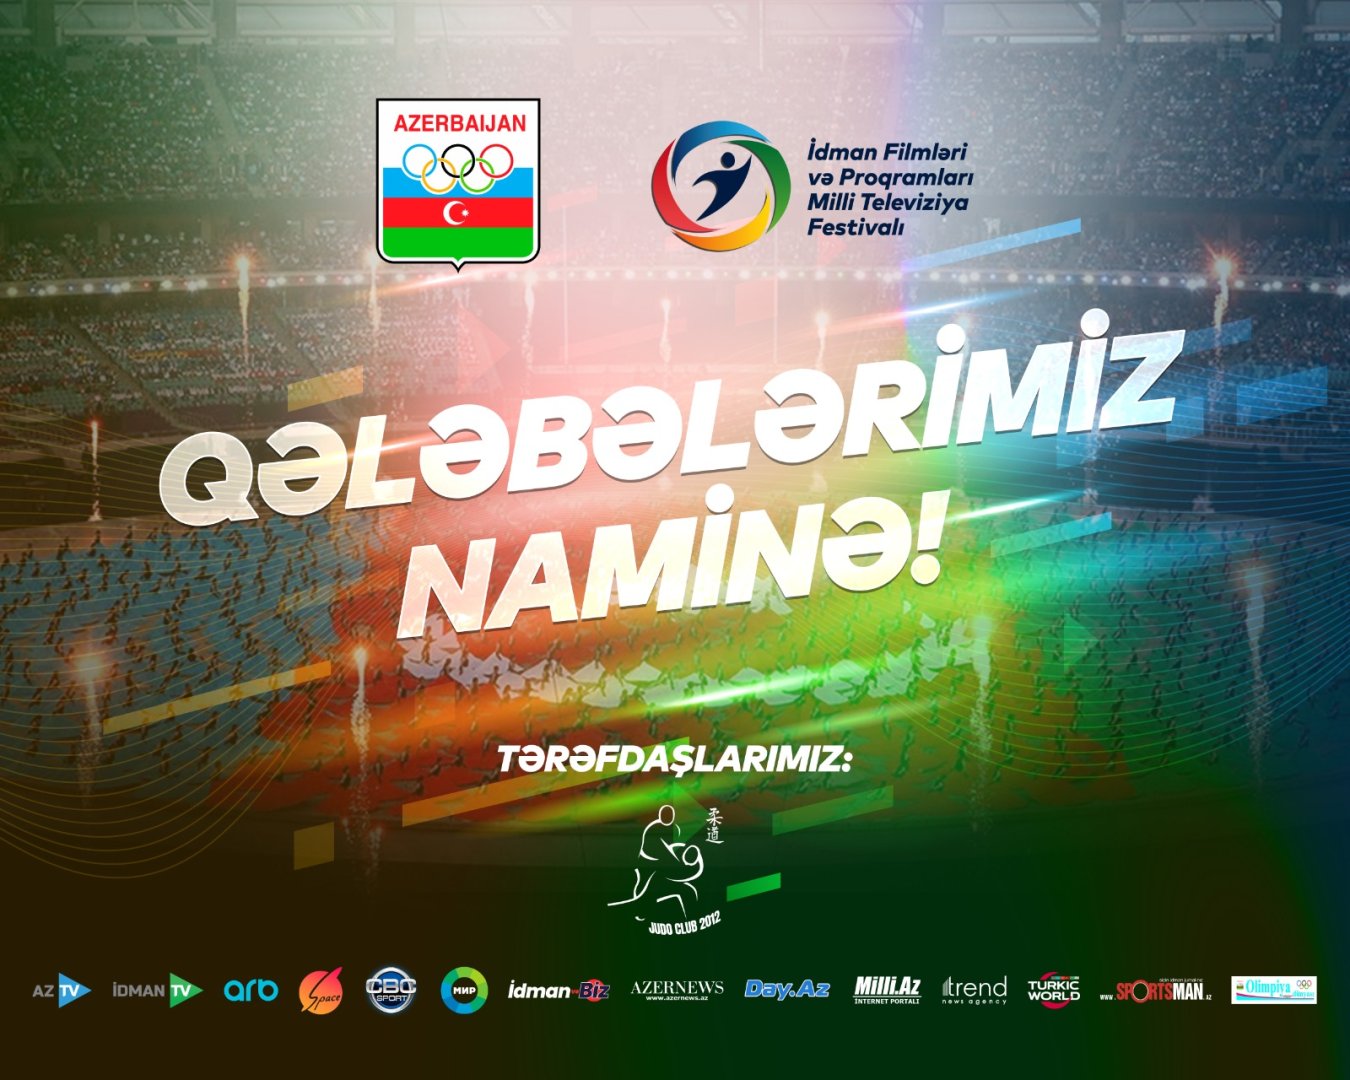 В Азербайджане стартовал Национальный телевизионный фестиваль спортивных фильмов и программ, учрежденный НОК